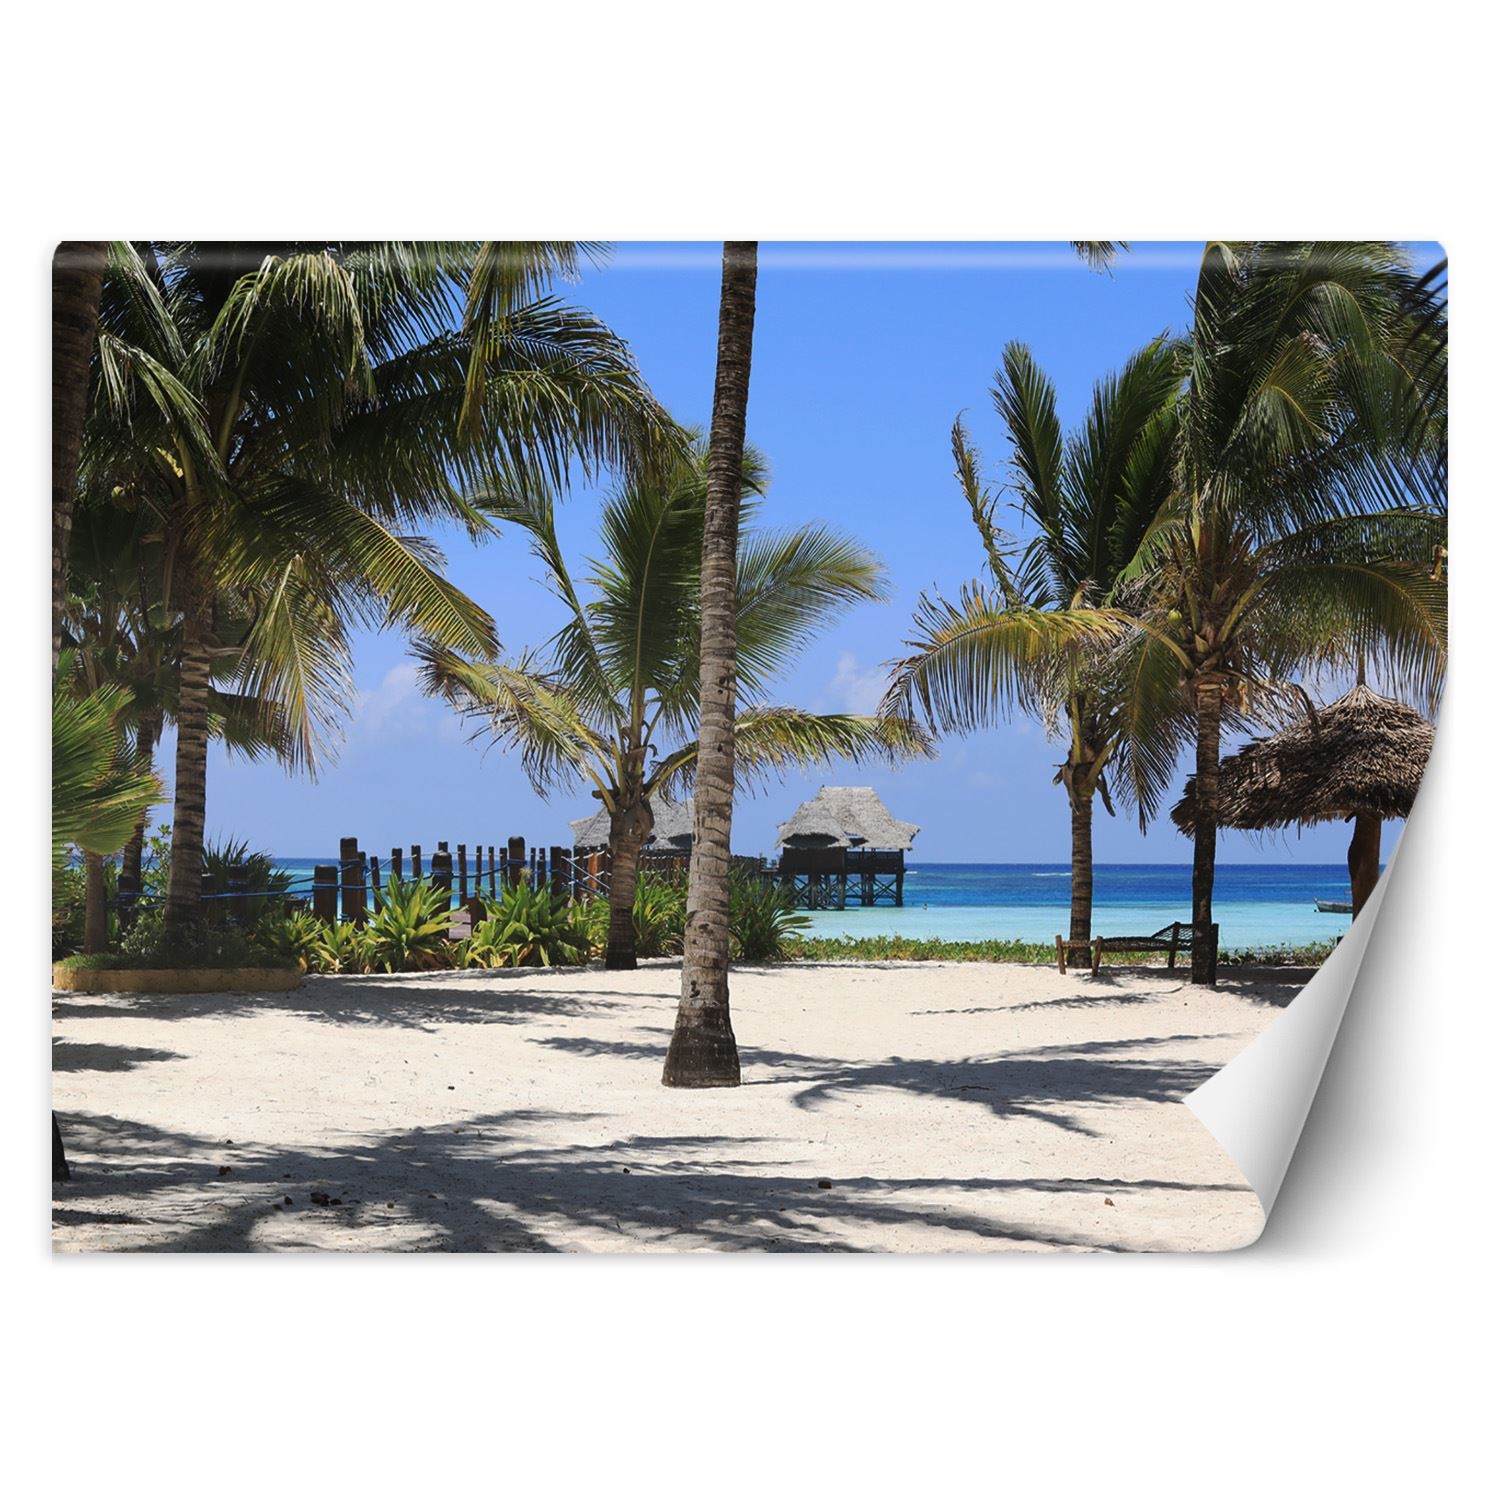 Trend24 – Behang – Maldiven – Behangpapier – Fotobehang Natuur – Behang Woonkamer – 450x315x2 cm – Incl. behanglijm